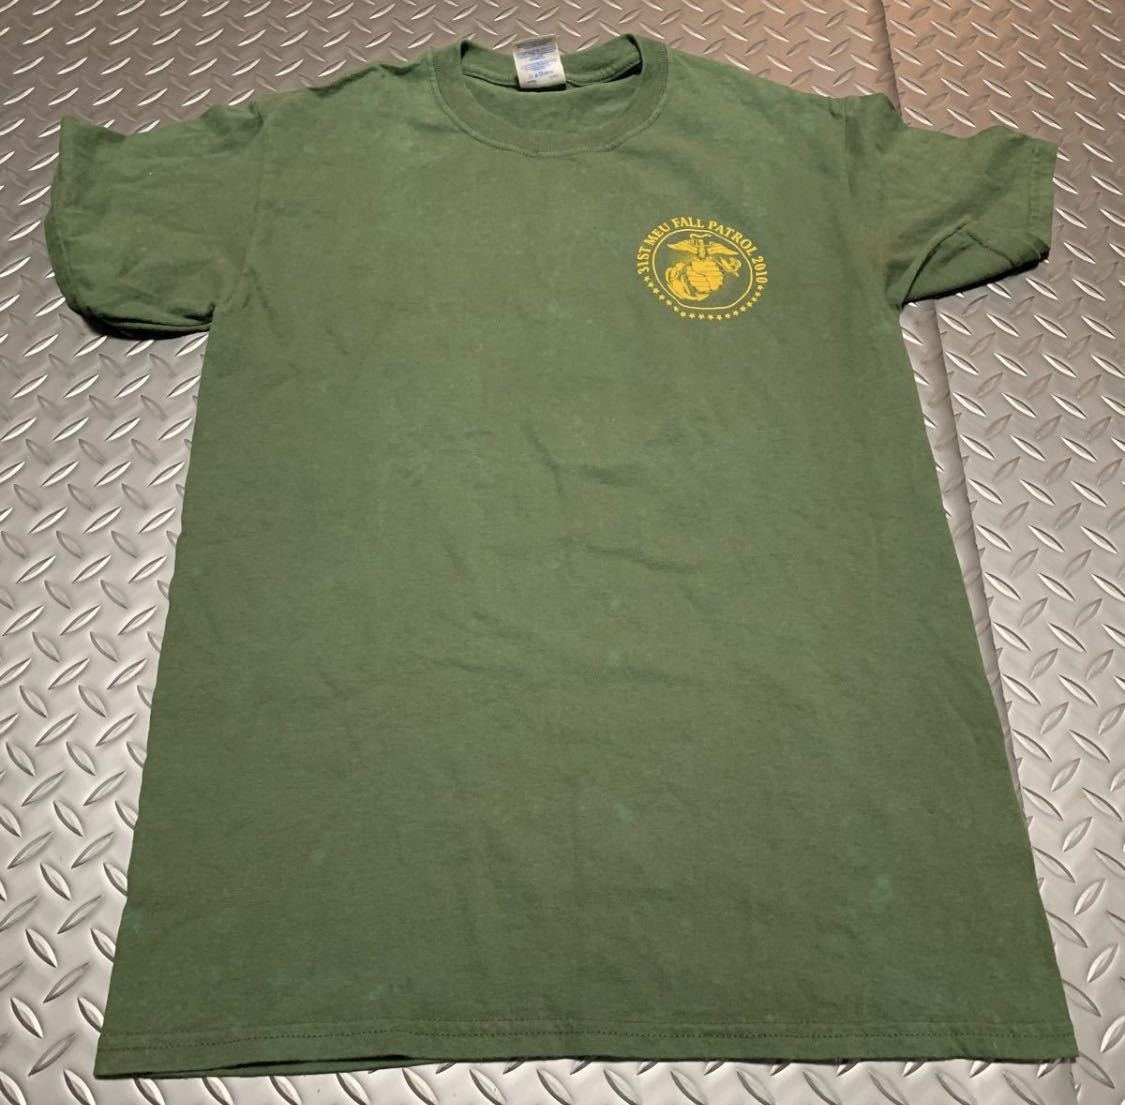 米軍 海兵隊 放出品 31ST MEU Tシャツ 半袖 サイズ S サバゲー アメリカ 古着 2010 PATROL パトロール アウトドア_画像3